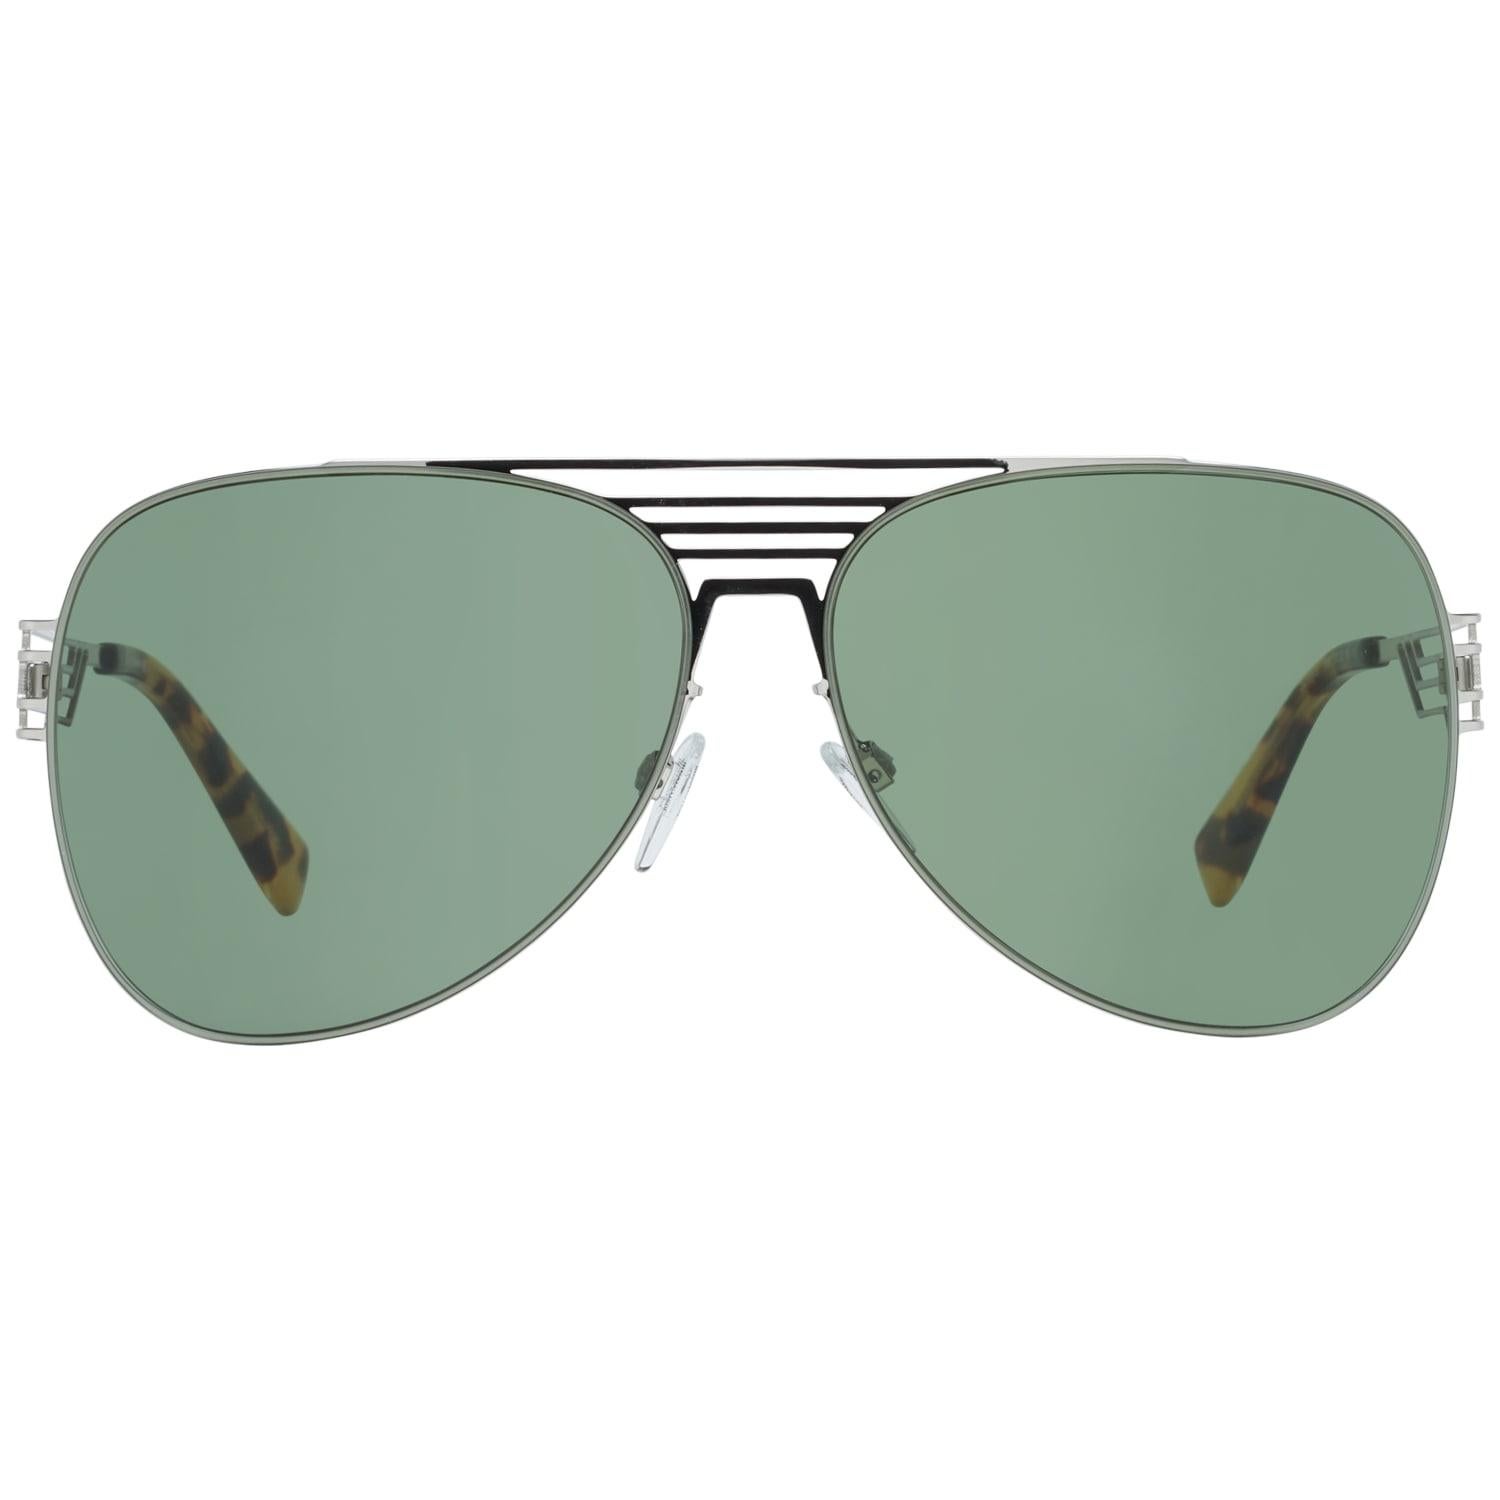 Just Cavalli Mint Unisex Silver Sunglasses JC914S 6116N 61-13-142 mm 2